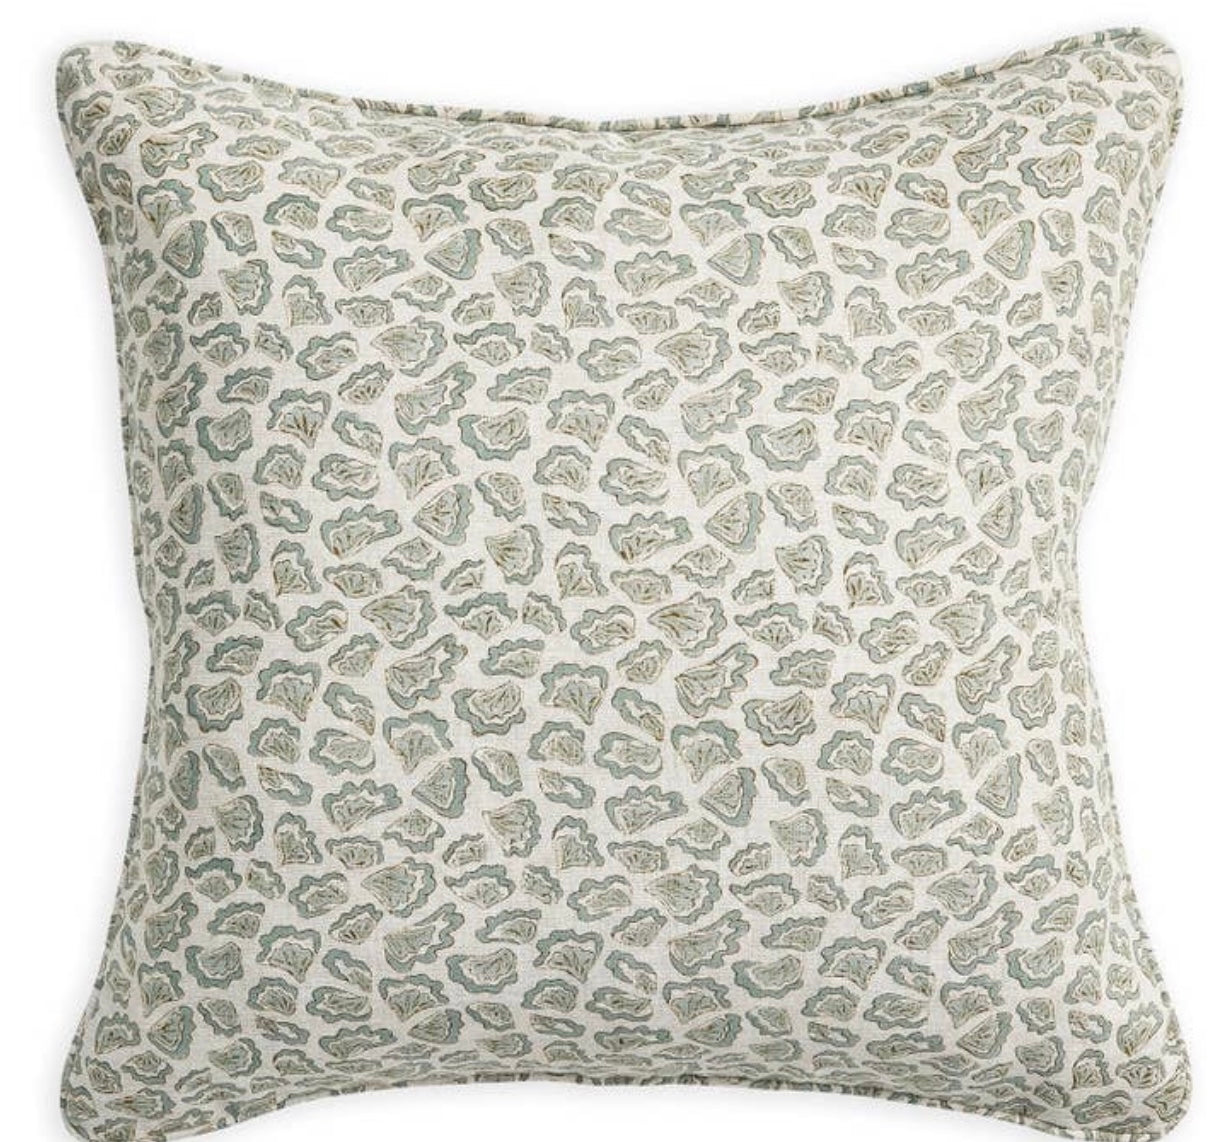 Walter G 20x20 Linen Block Print Pillows